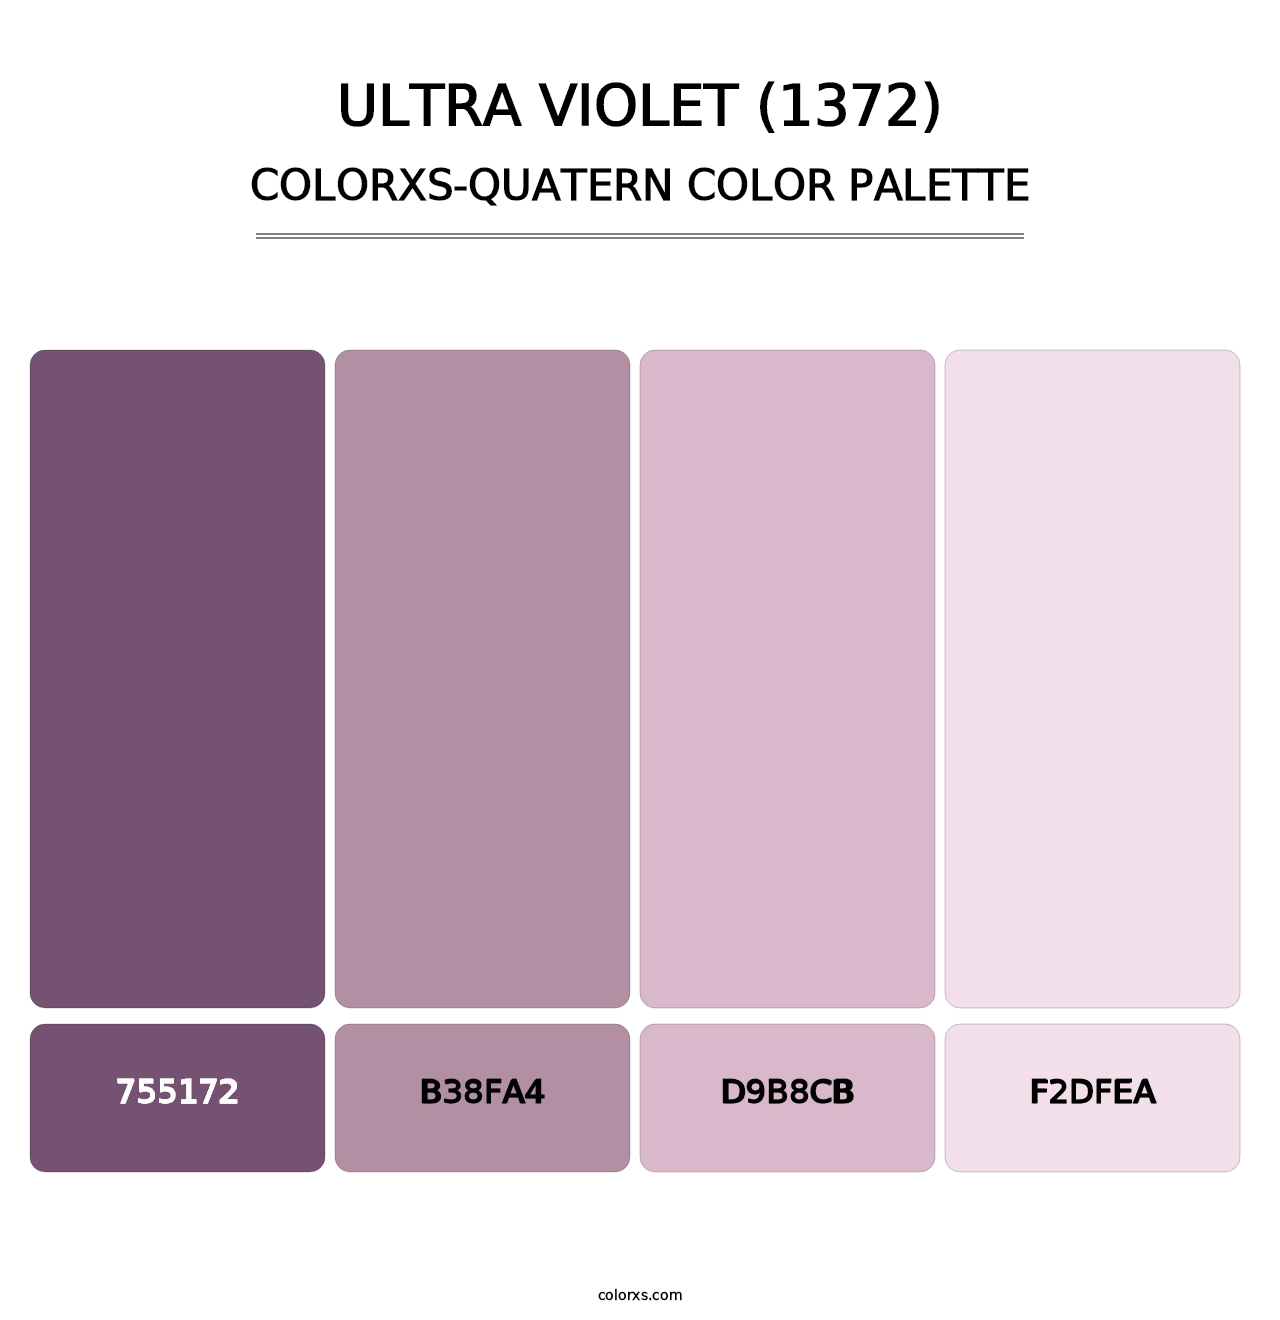 Ultra Violet (1372) - Colorxs Quatern Palette